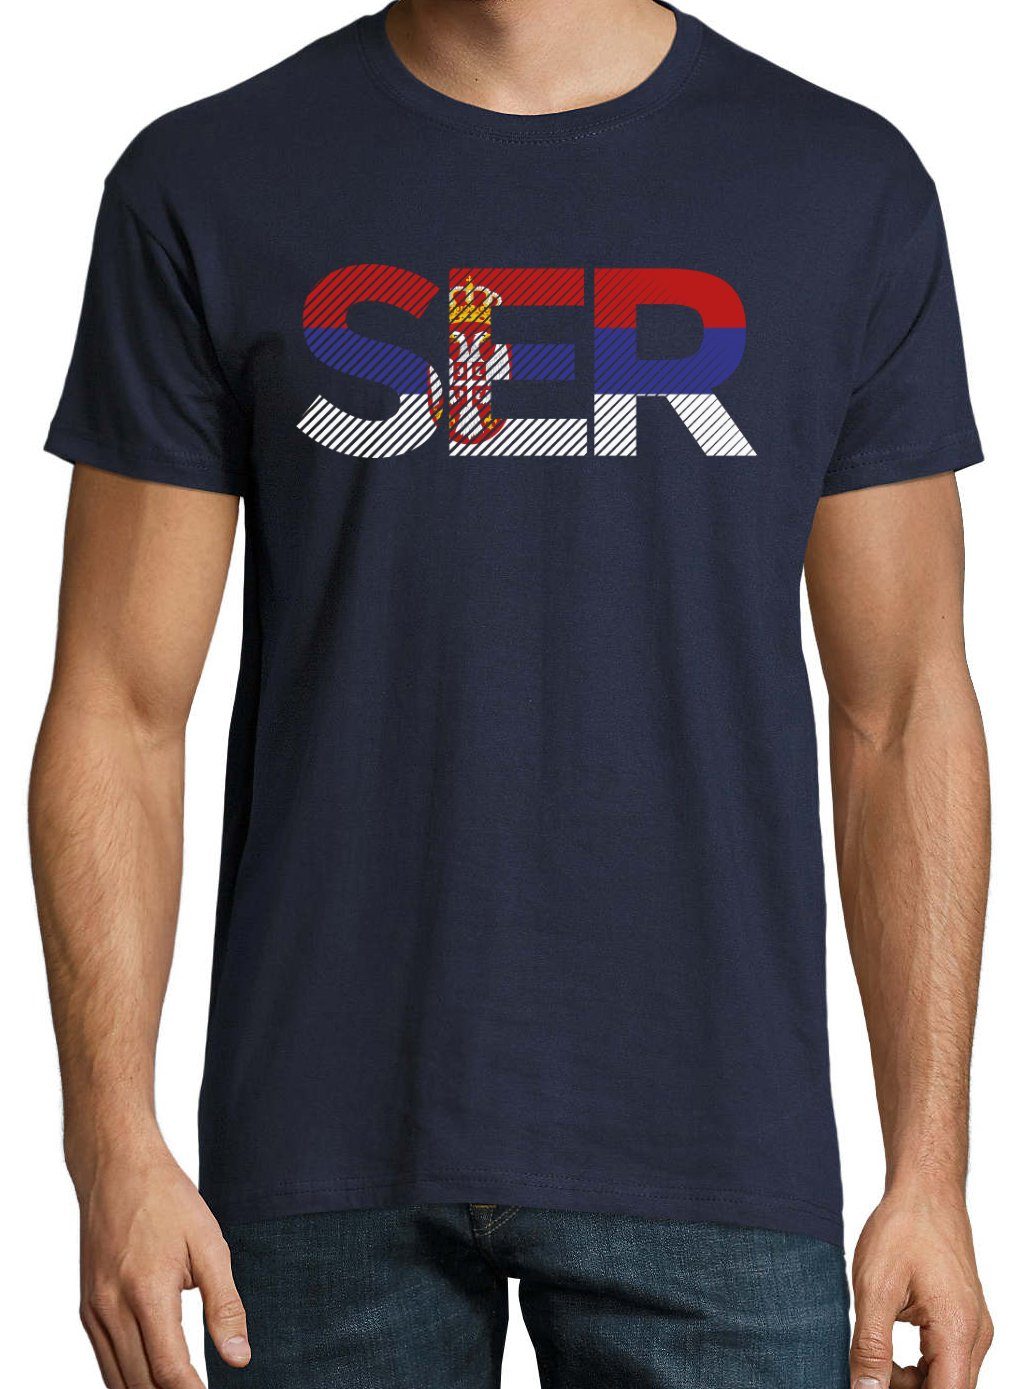 Youth Designz T-Shirt Frontprint im Fußball mit T-Shirt Look SER Serbien Herren Navy